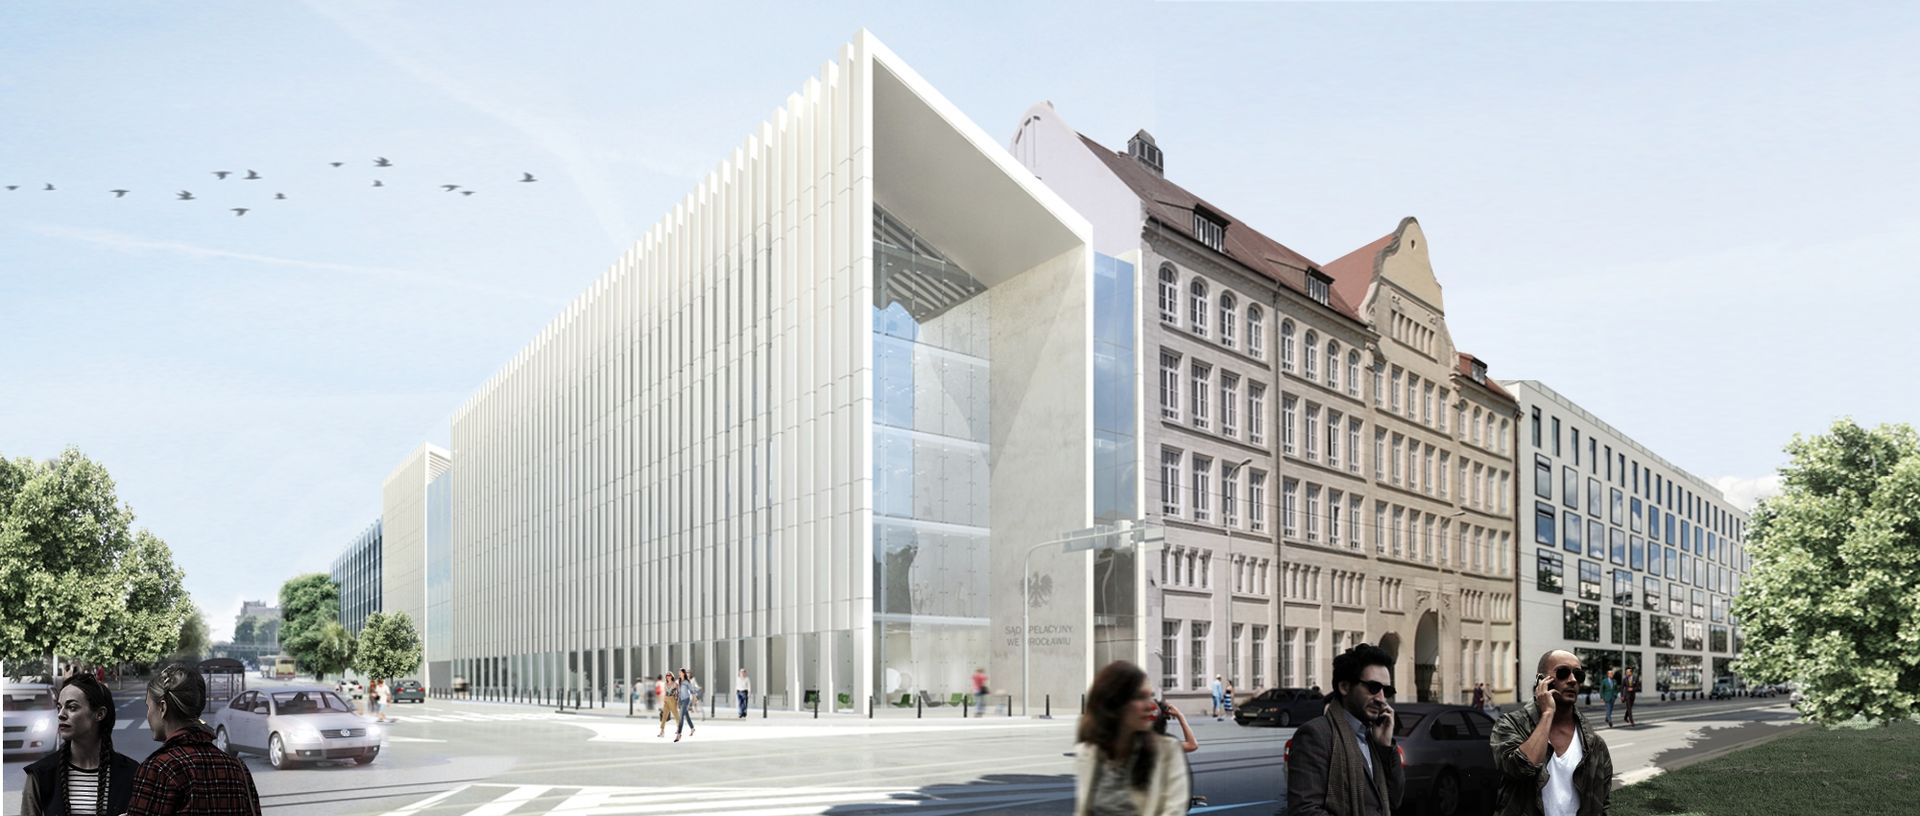 Mirbud wybuduje nową siedzibę Sądu Apelacyjnego we Wrocławiu 